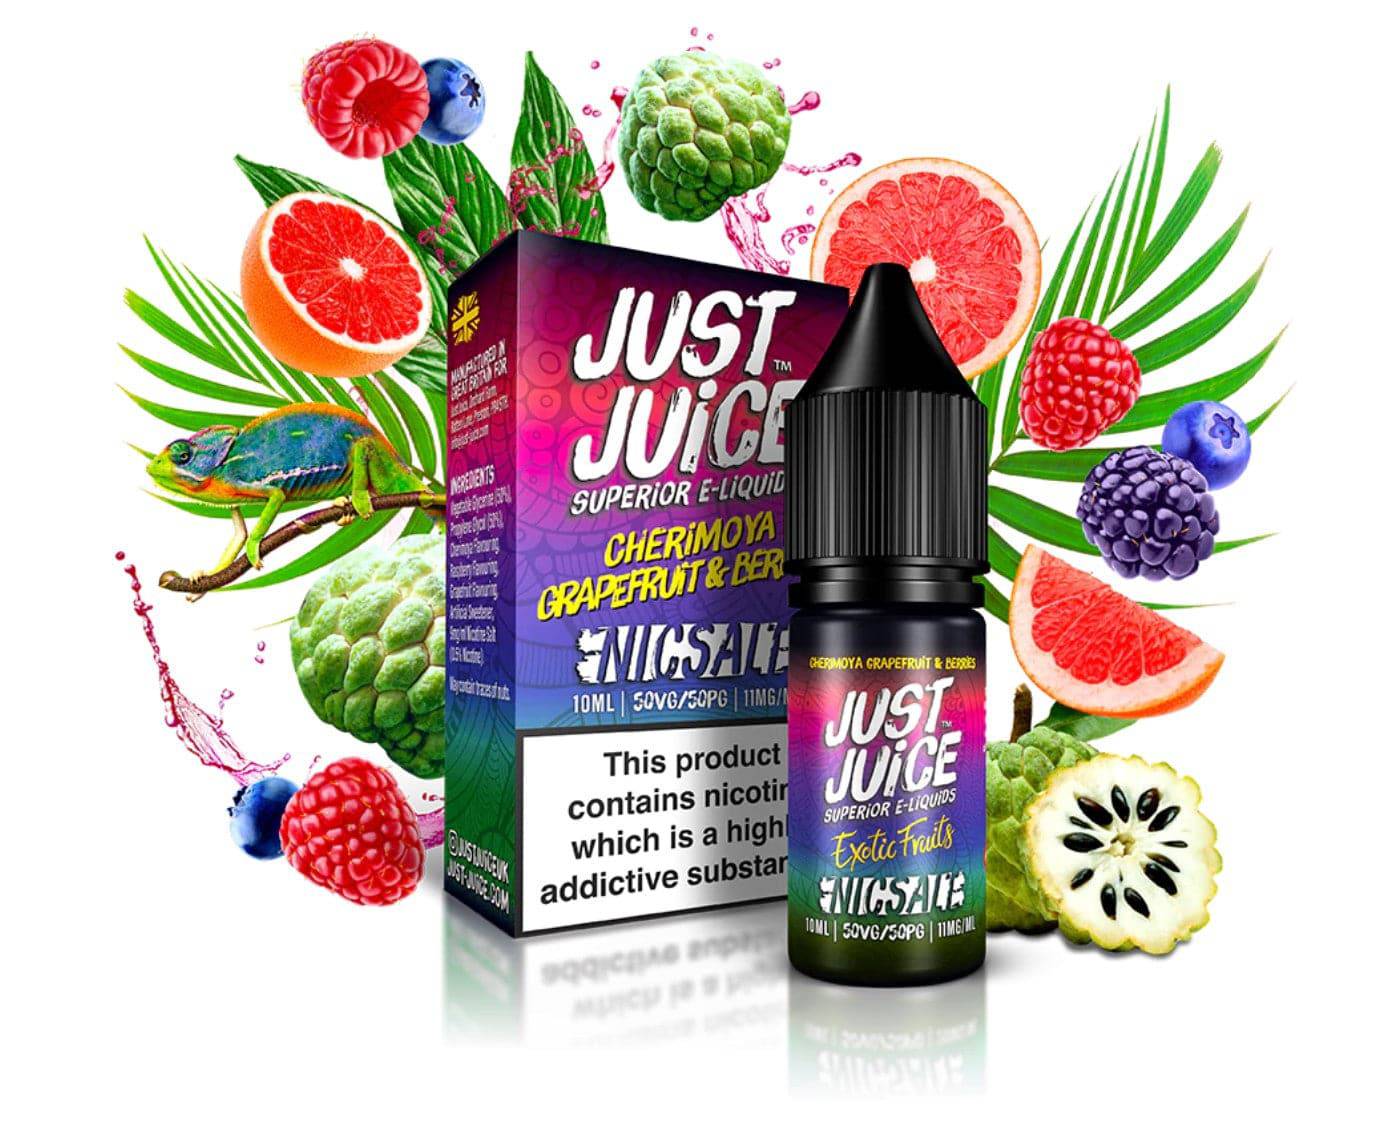 JUST JUICE - Cherimoya, Grapefruit & Berries 10ml E-Liquid - The British Vape Company